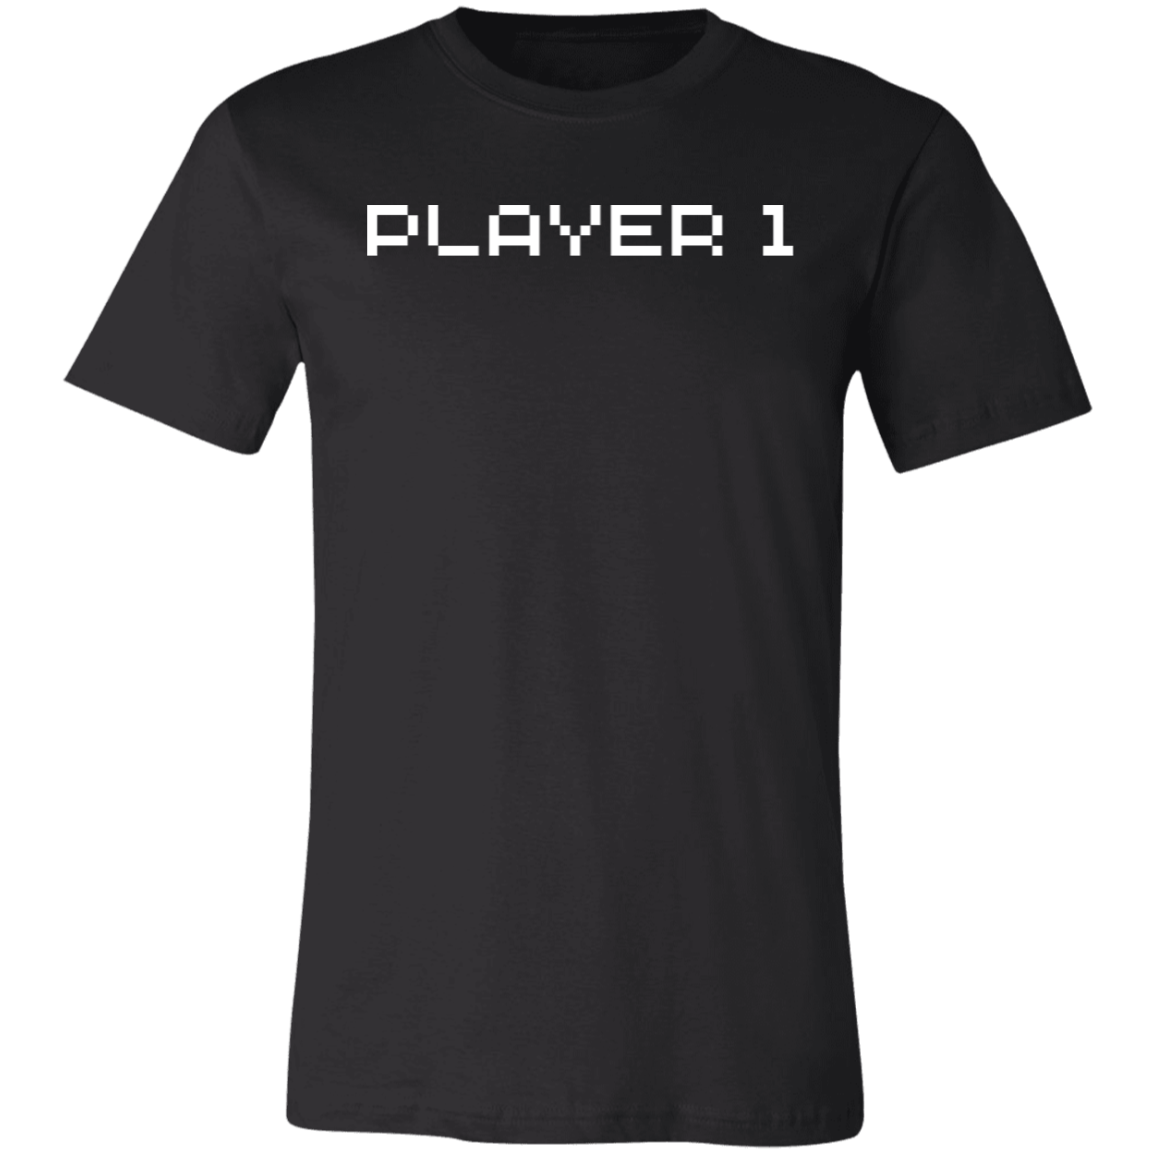 Player 1 Short-Sleeve T-Shirt